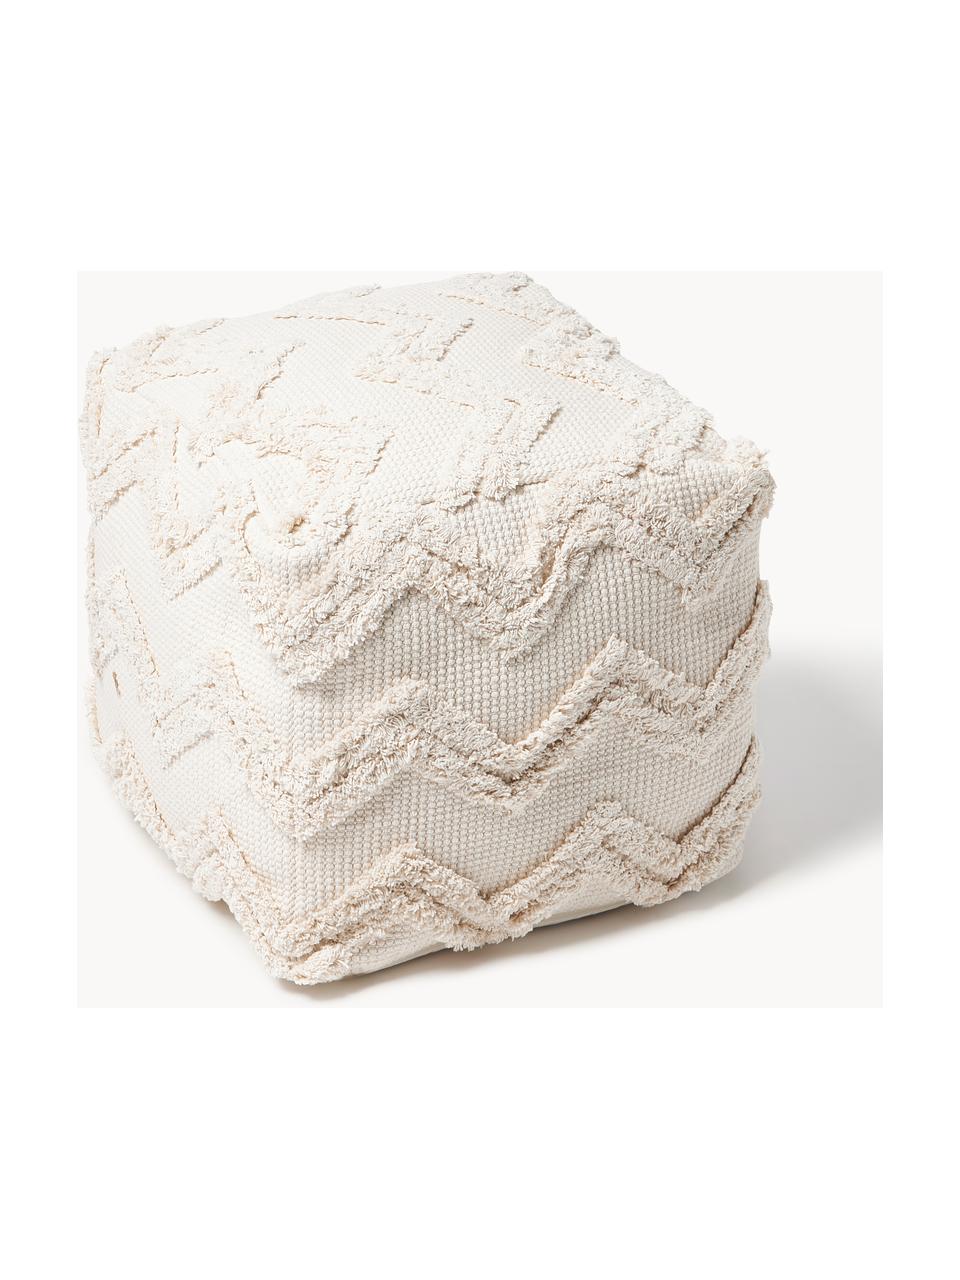 Cojines de asiento de algodón a rayas Silla, 2 uds., Funda: 100% algodón, Negro, blanco, An 40 x L 40 cm